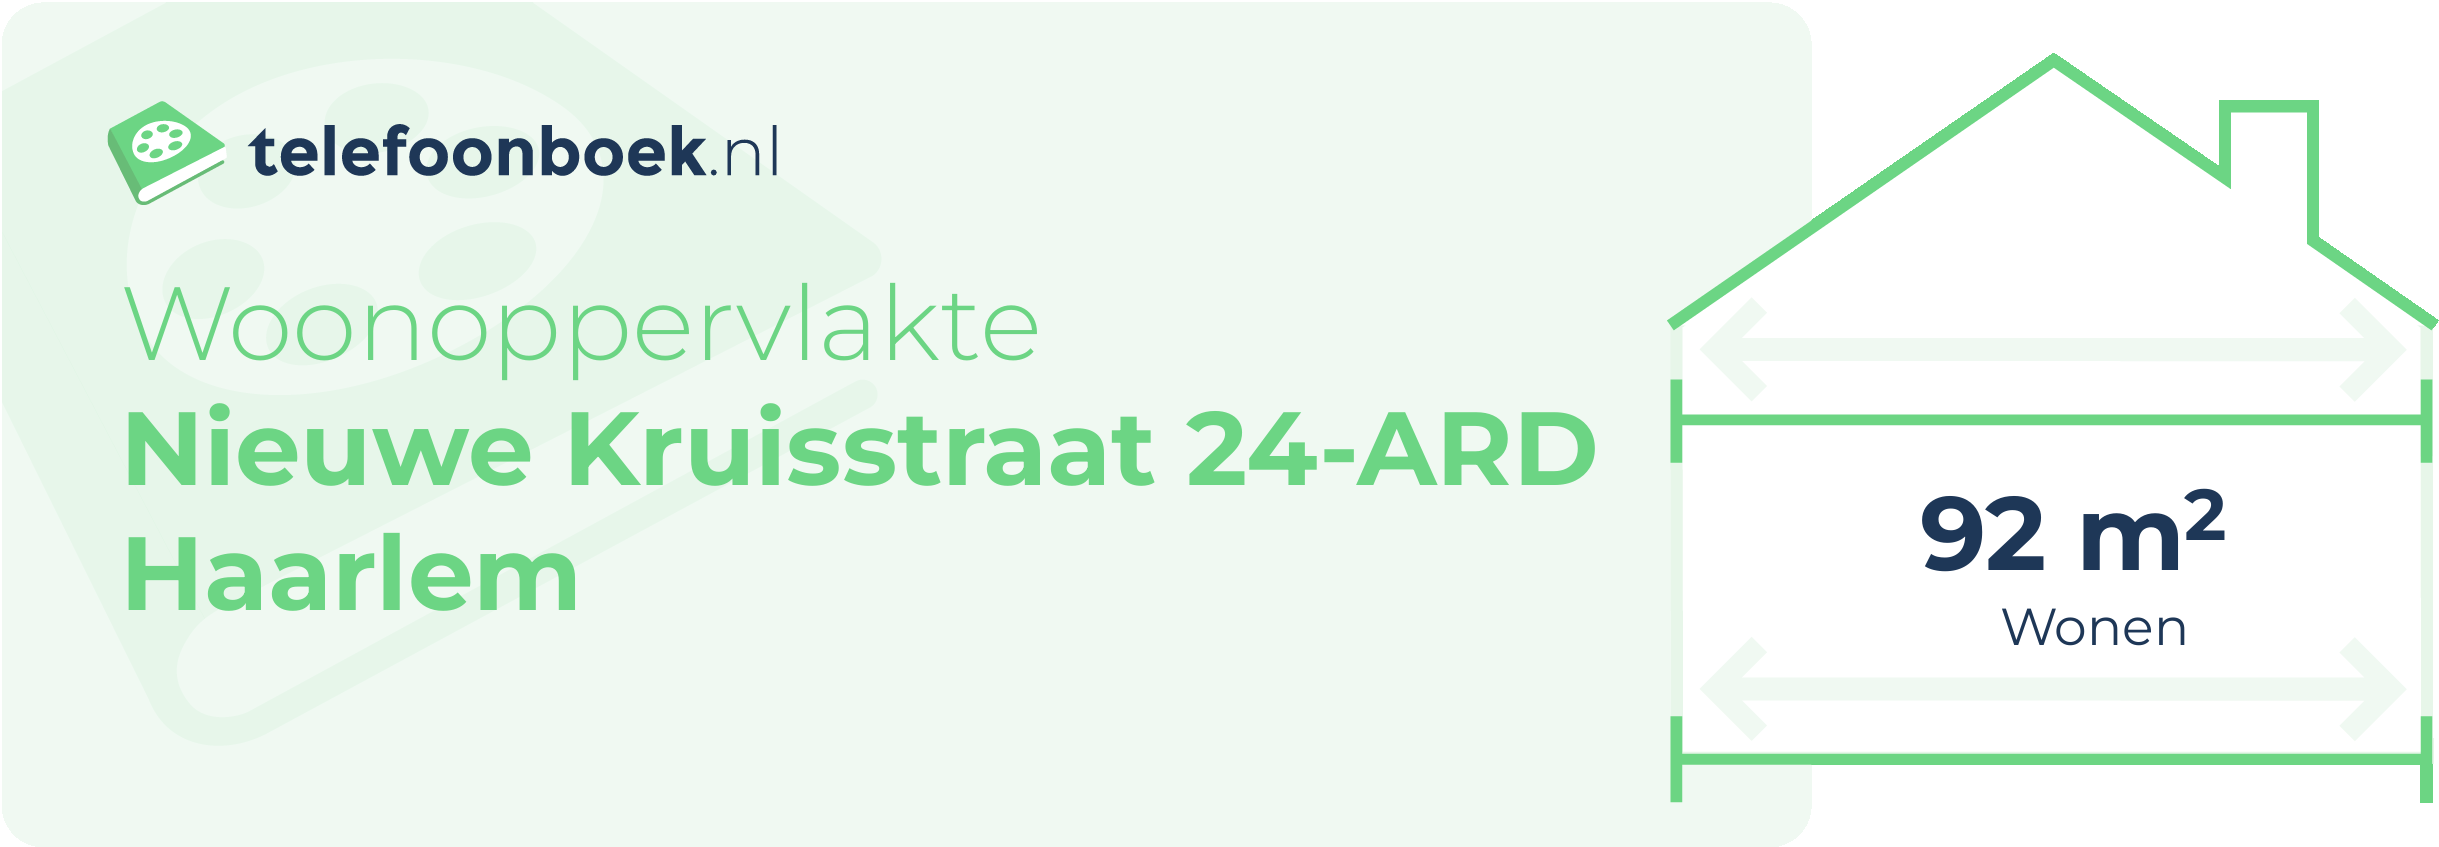 Woonoppervlakte Nieuwe Kruisstraat 24-ARD Haarlem